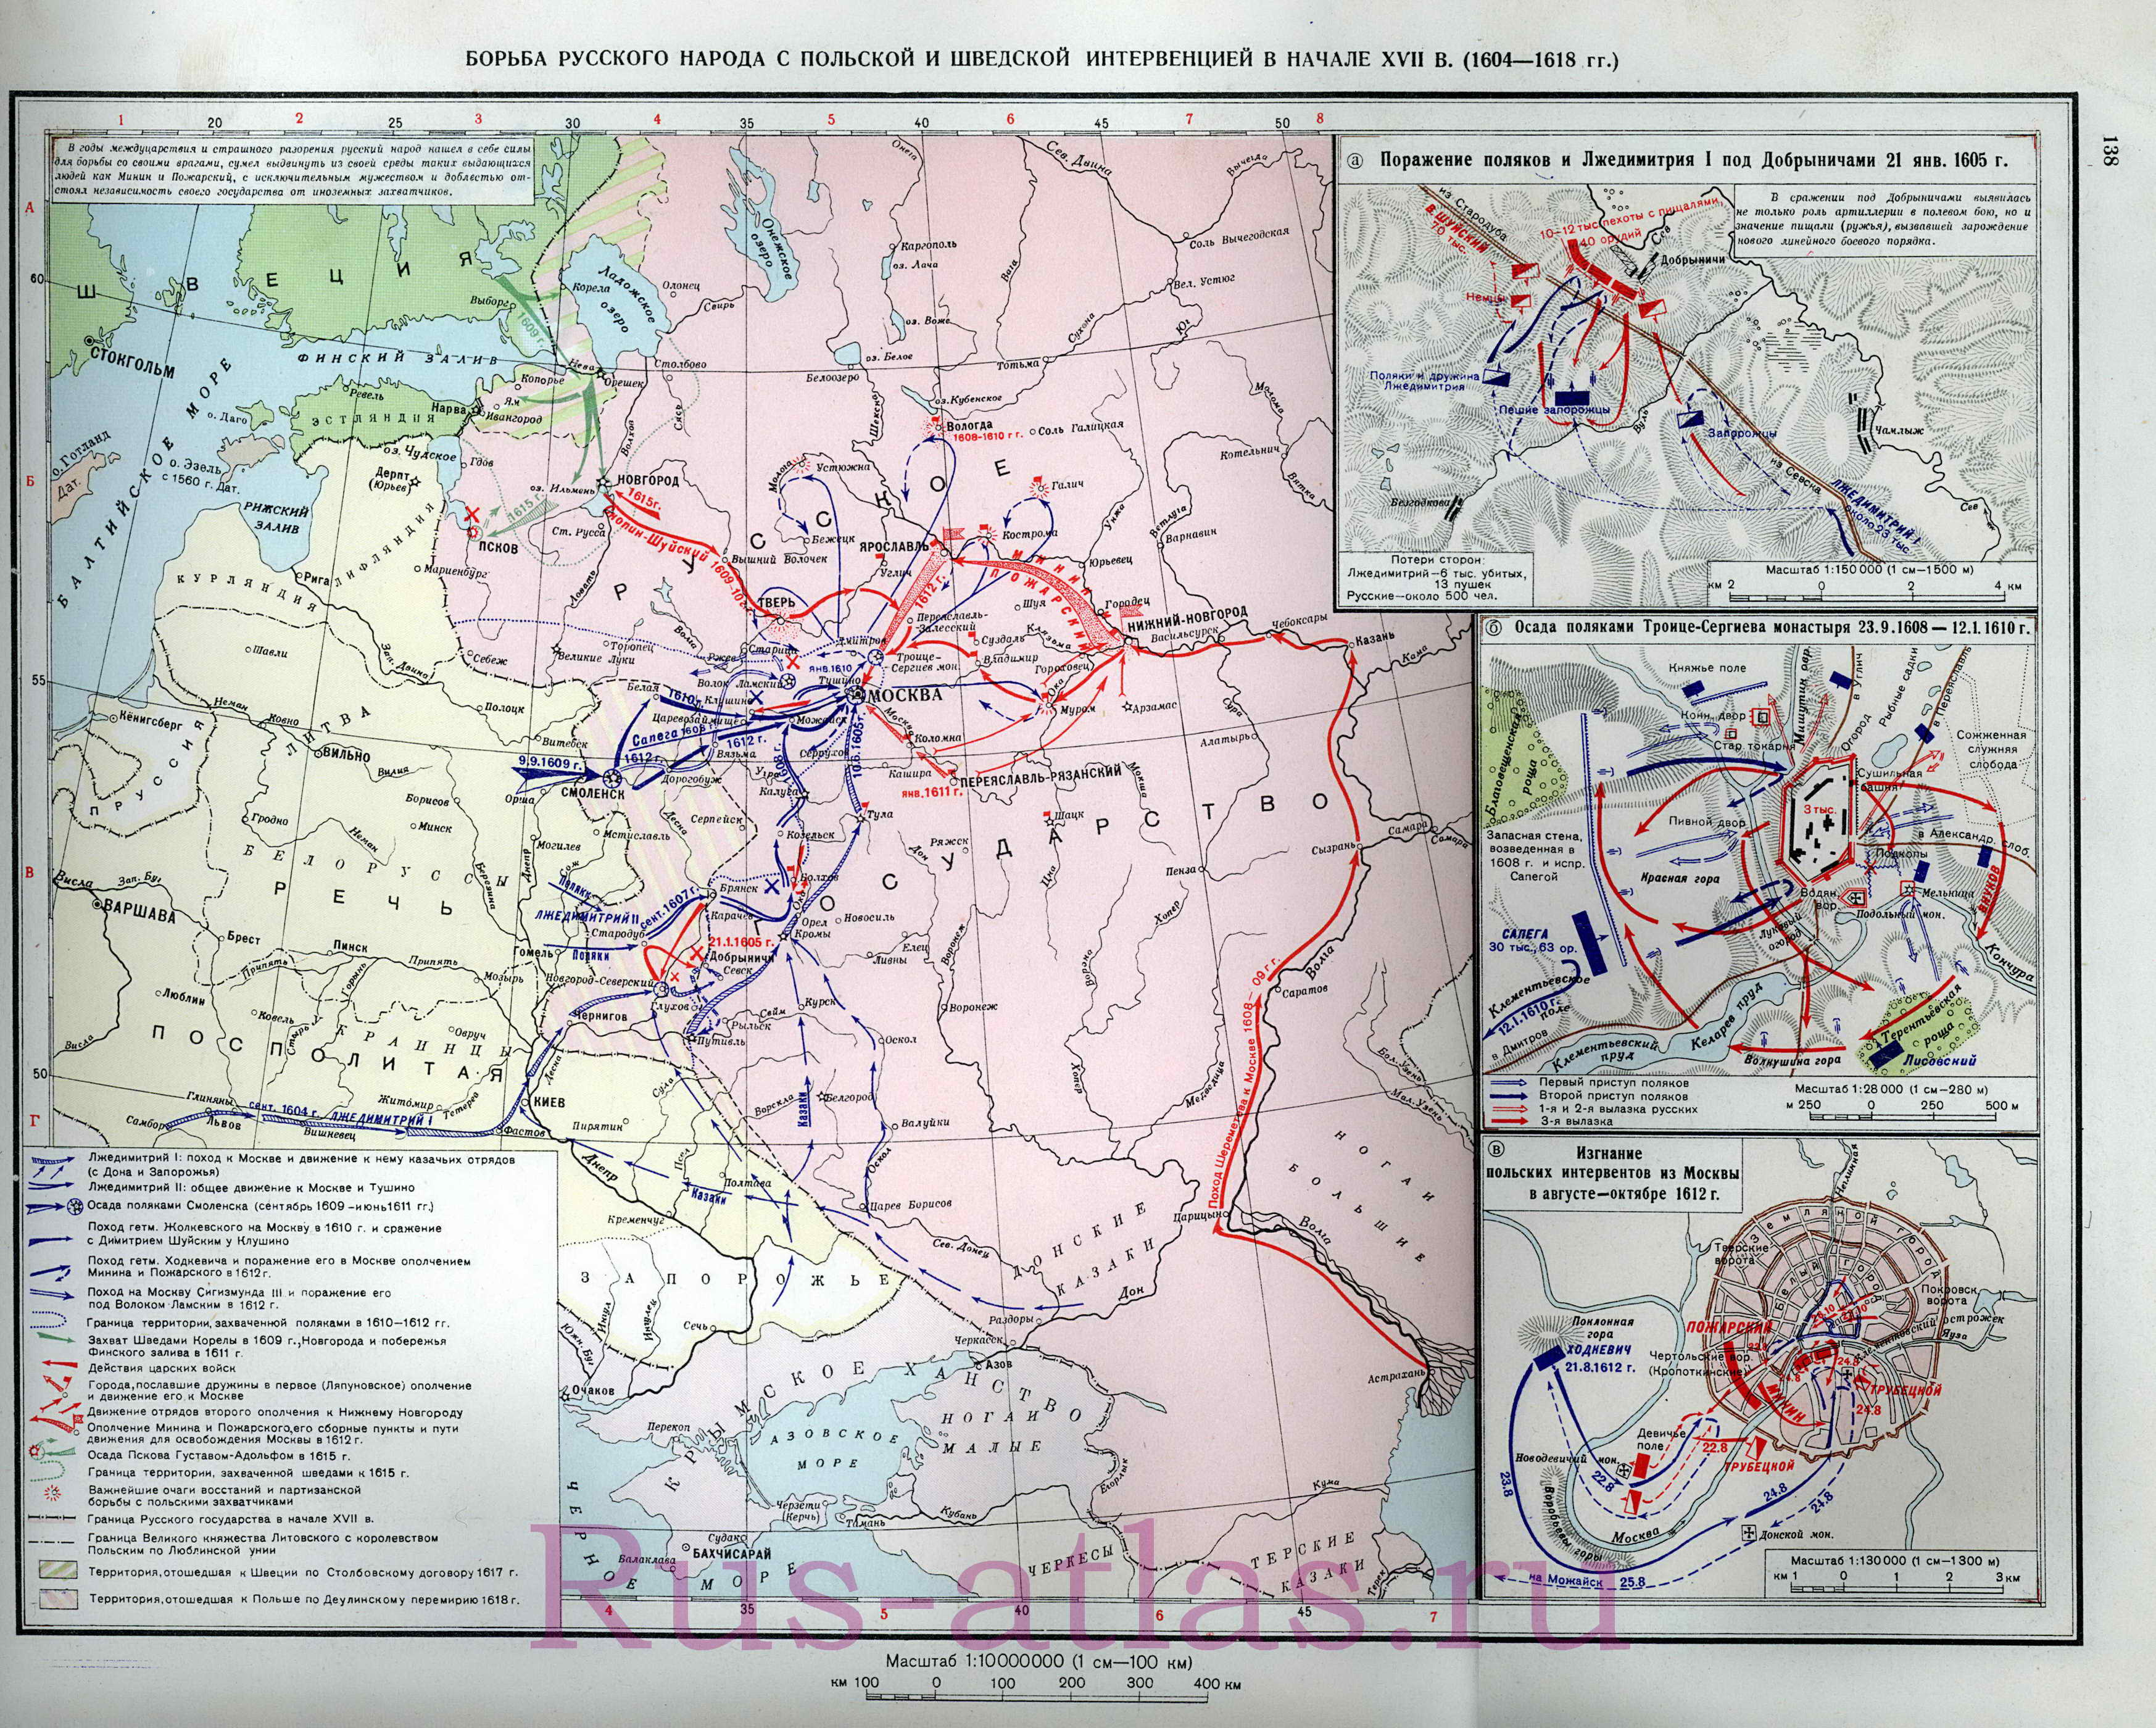 Карта войны России с Польшей и Швецией 1604-1618. Подробная карта войны России с польской и шведской интервенцией, A0 - 